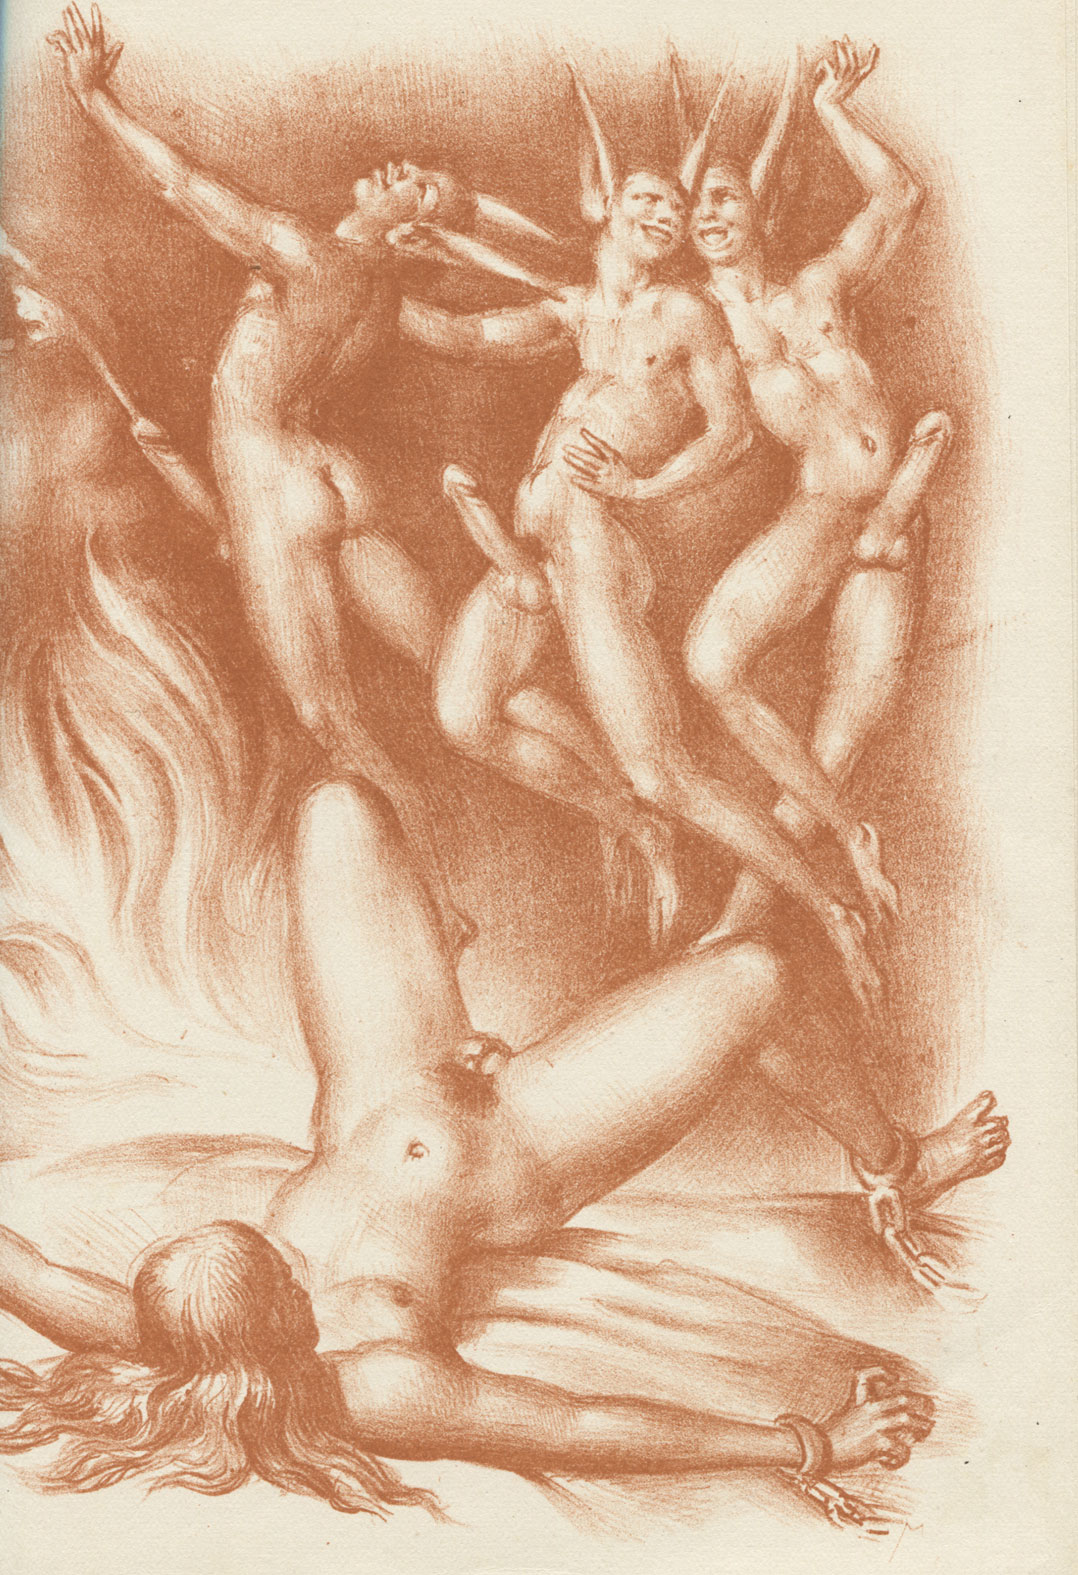 Porn Satanic Artwork - Satanic Erotic Occult Art | Sex Pictures Pass